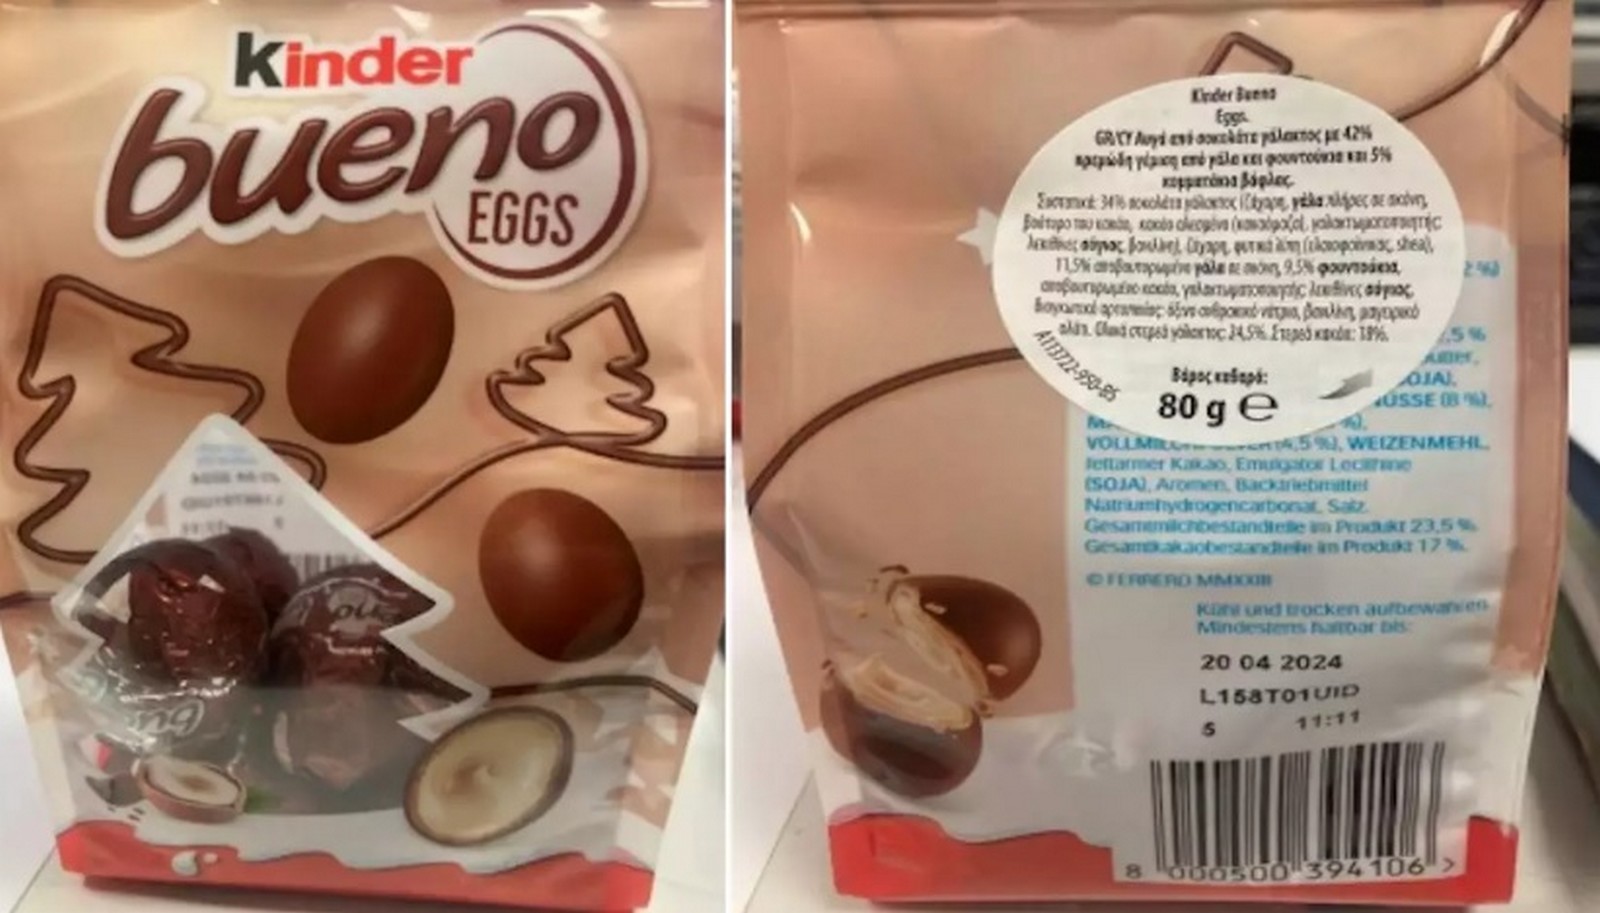 ΕΦΕΤ: Ανακαλεί σοκολατένια αυγά Kinder Bueno – Βρέθηκε αλλεργιογόνο